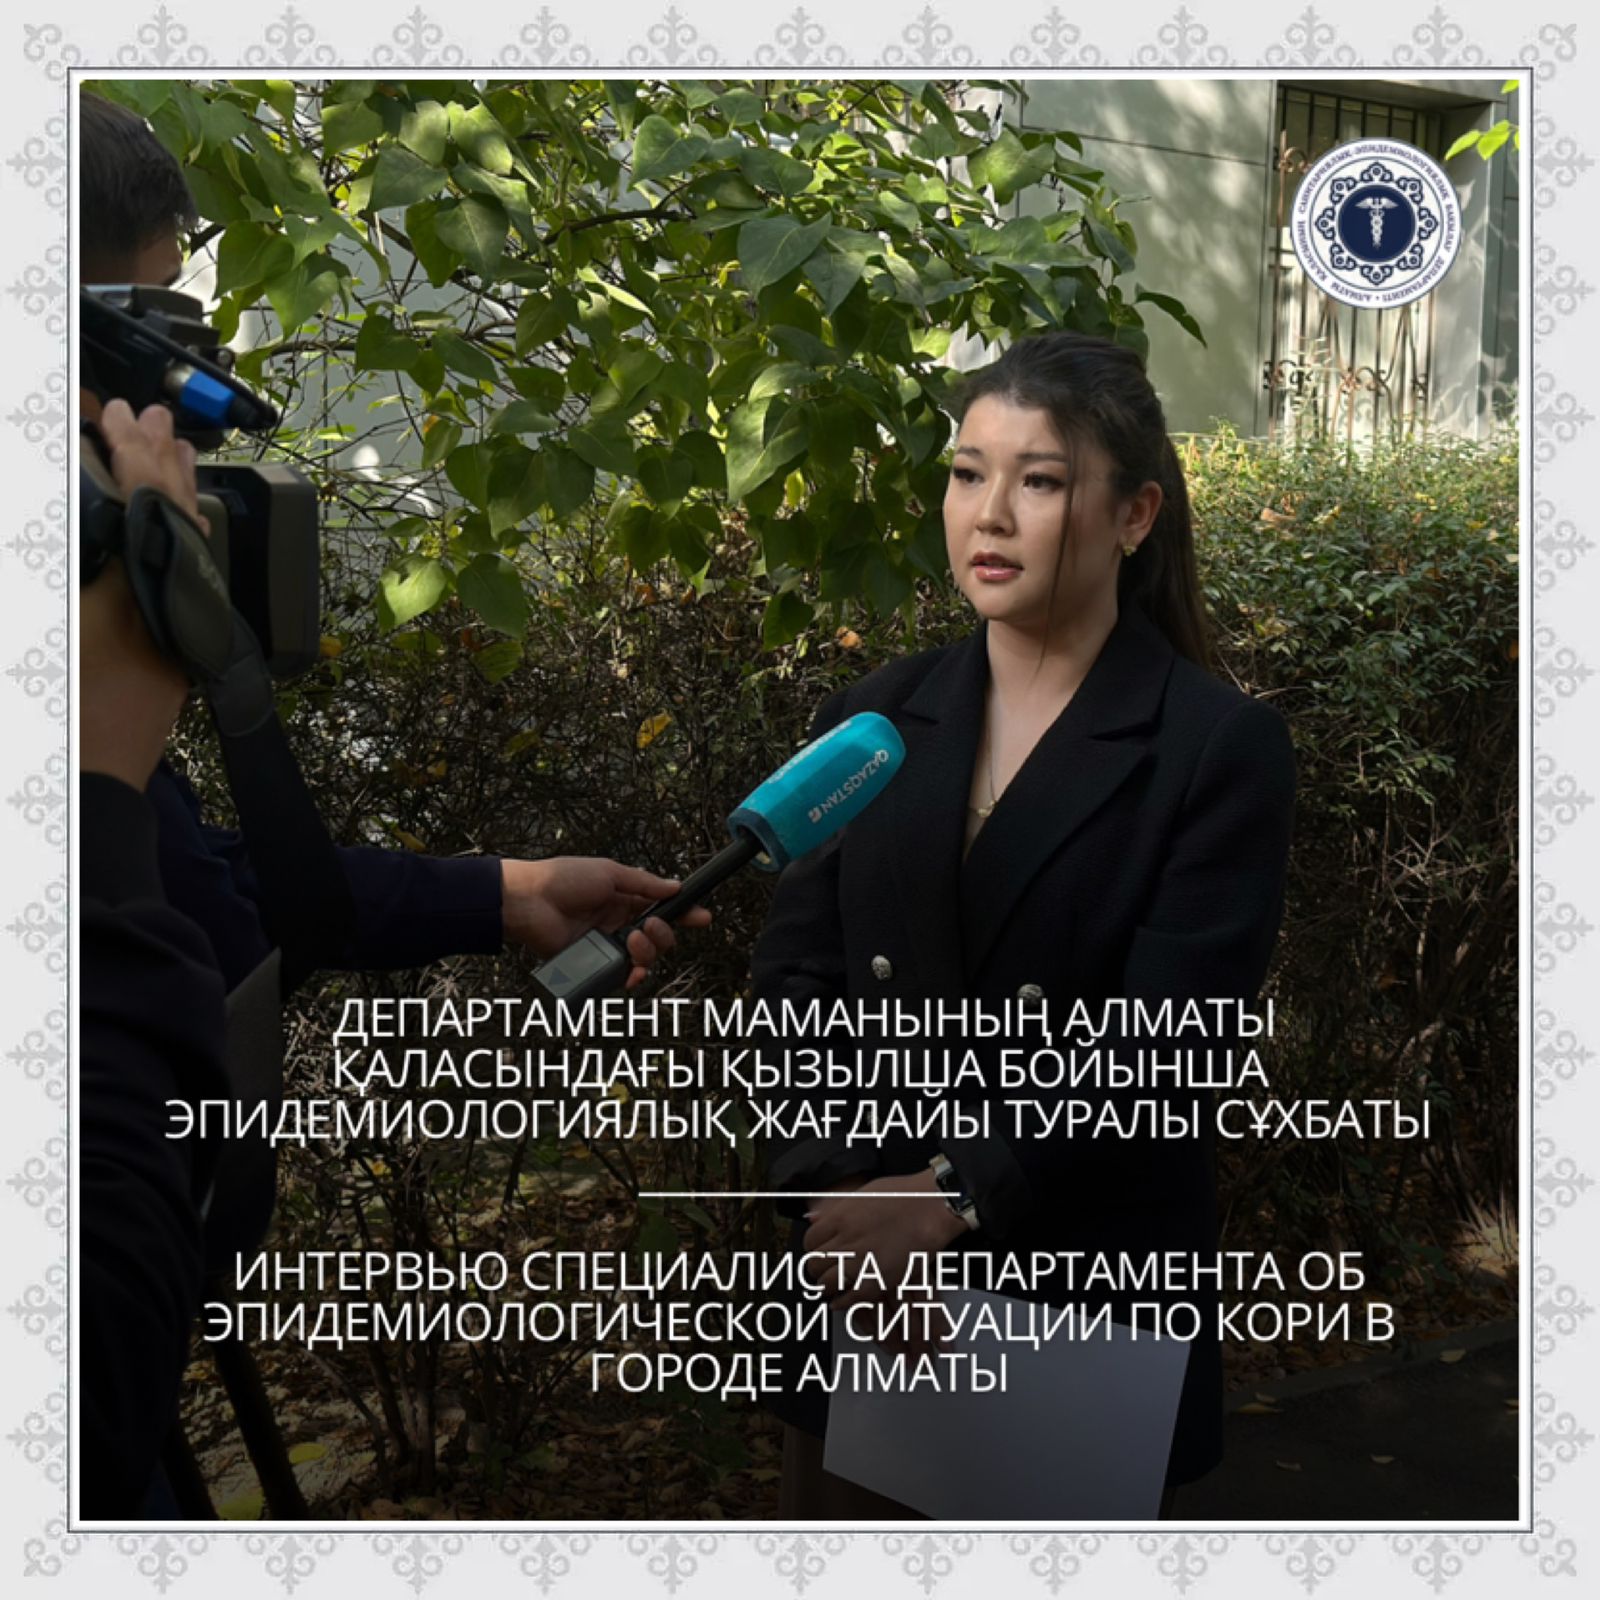 Интервью специалиста Департамента об эпидемиологической ситуации по кори в городе Алматы